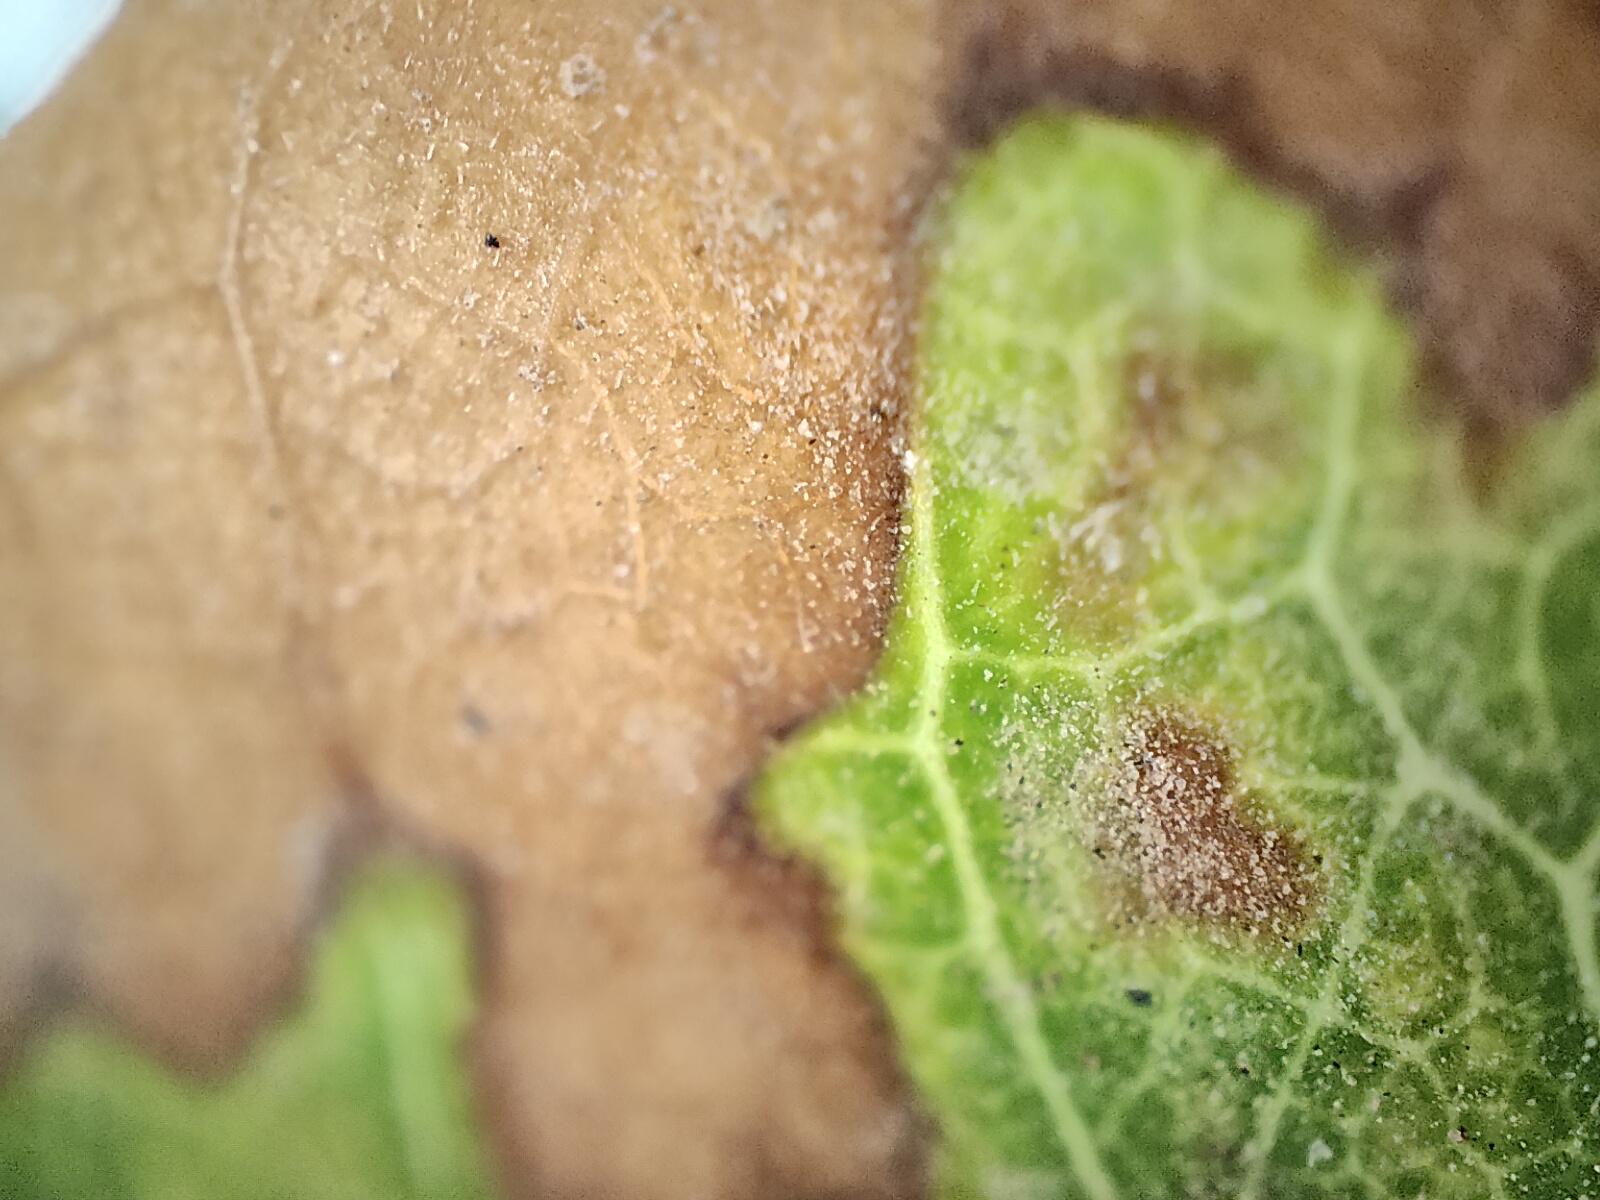 Μακρο όψη ραβδώσεων ενός φύλλου σε αποσύνθεση σε καφέ και πράσινα χρώματα φωτογραφημένη με τη κάμερα μικροσκοπίου του Realme GT 2 Pro.